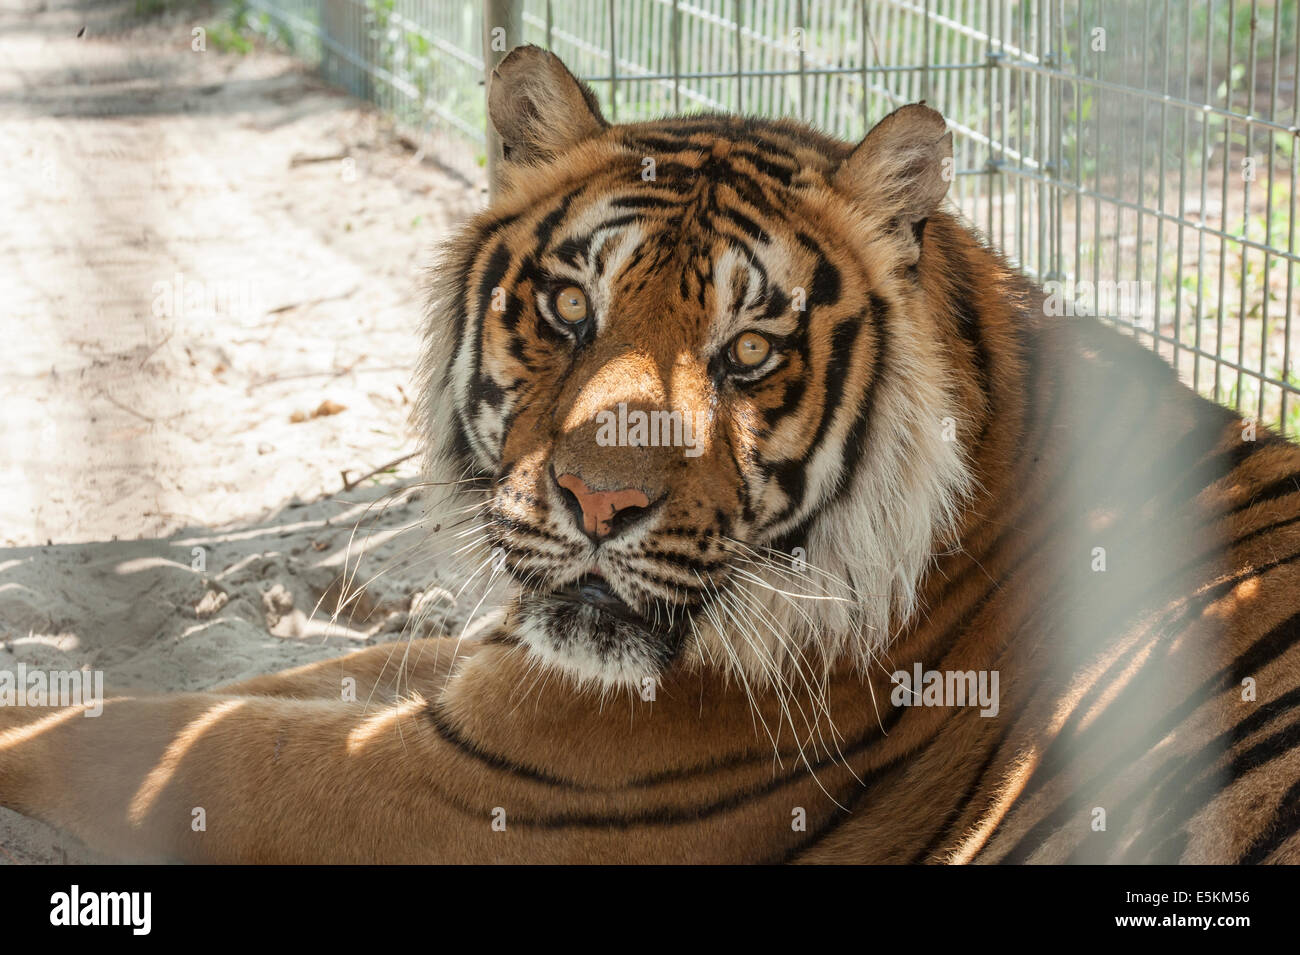 Tigre de Bengala en cautiverio en rescate de animales del bosque, de Ocala, Florida, EE.UU. Foto de stock